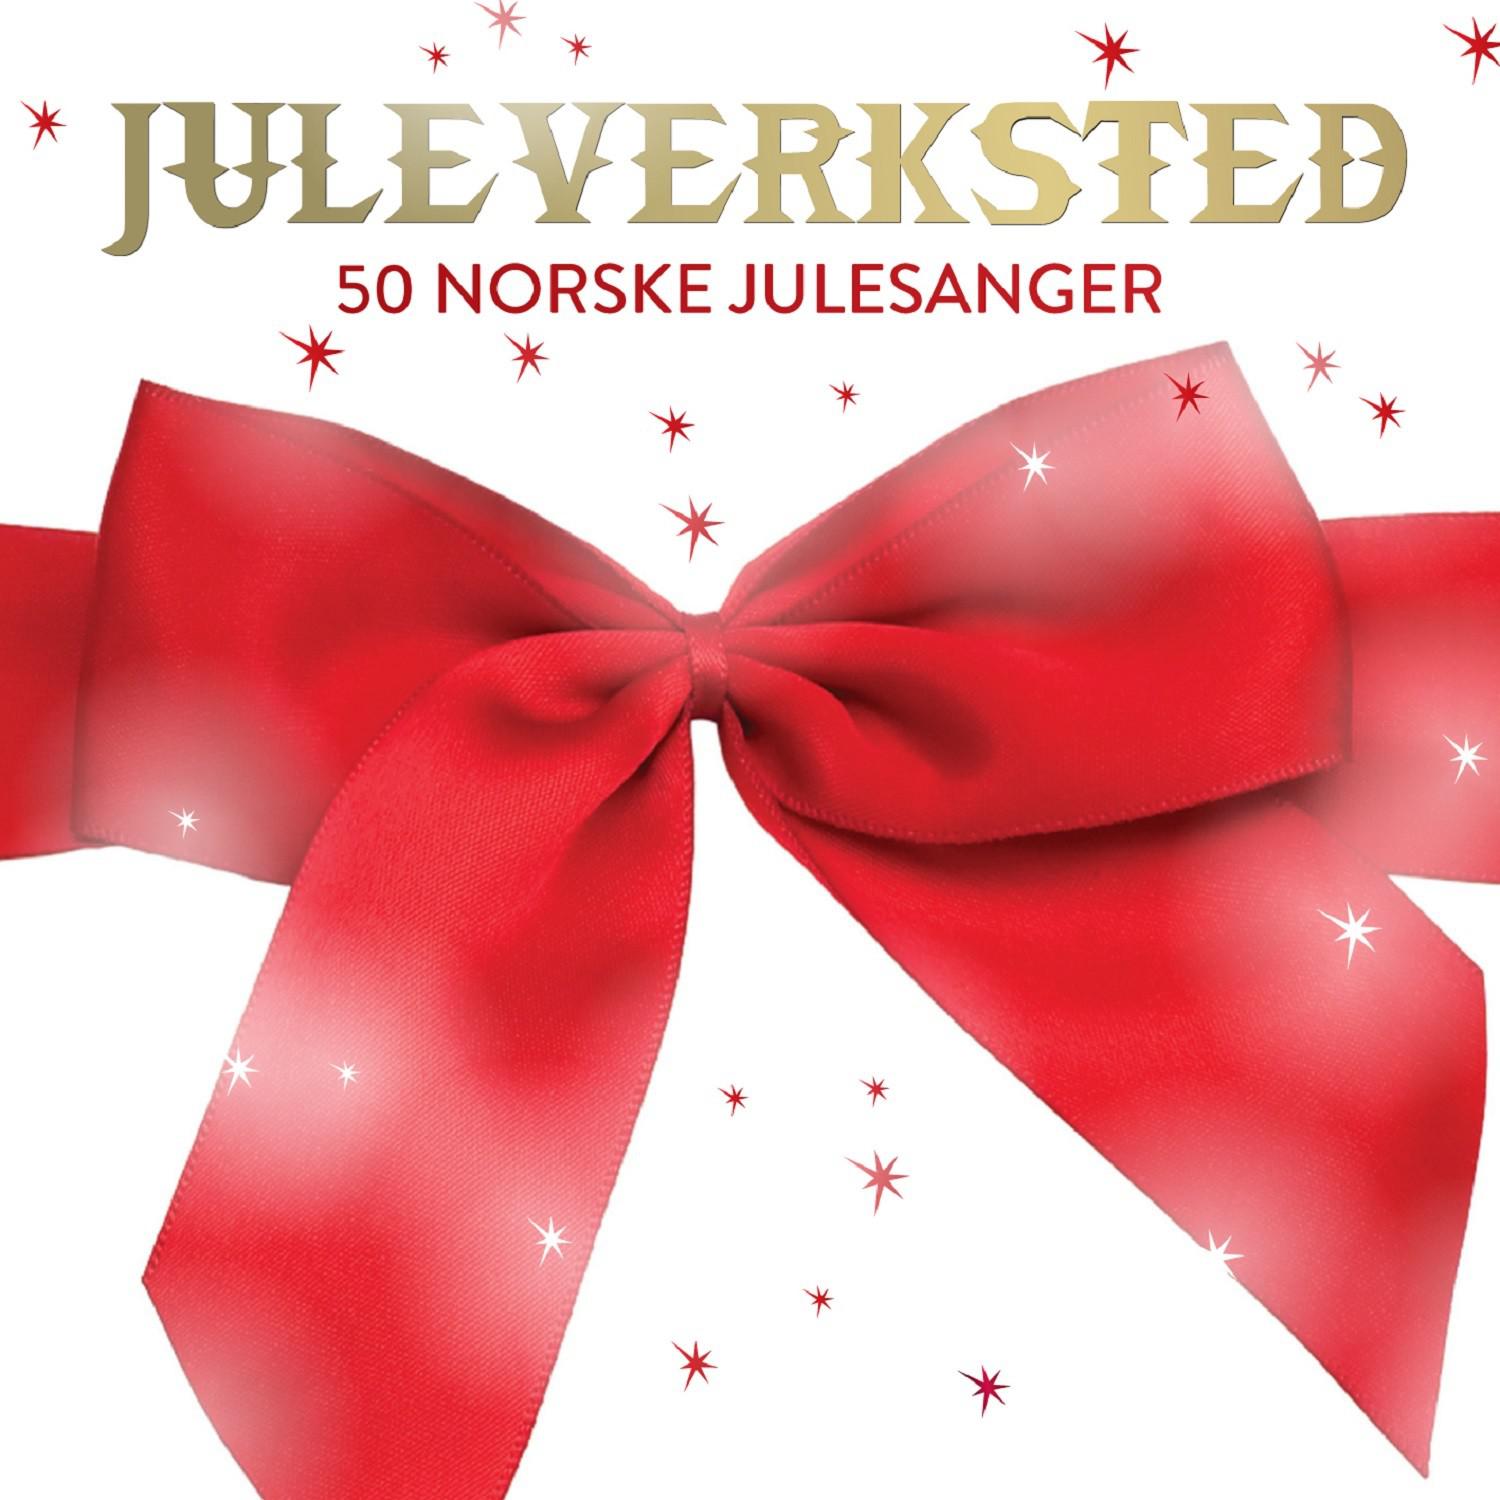 Juleverksted: 50 norske julesanger